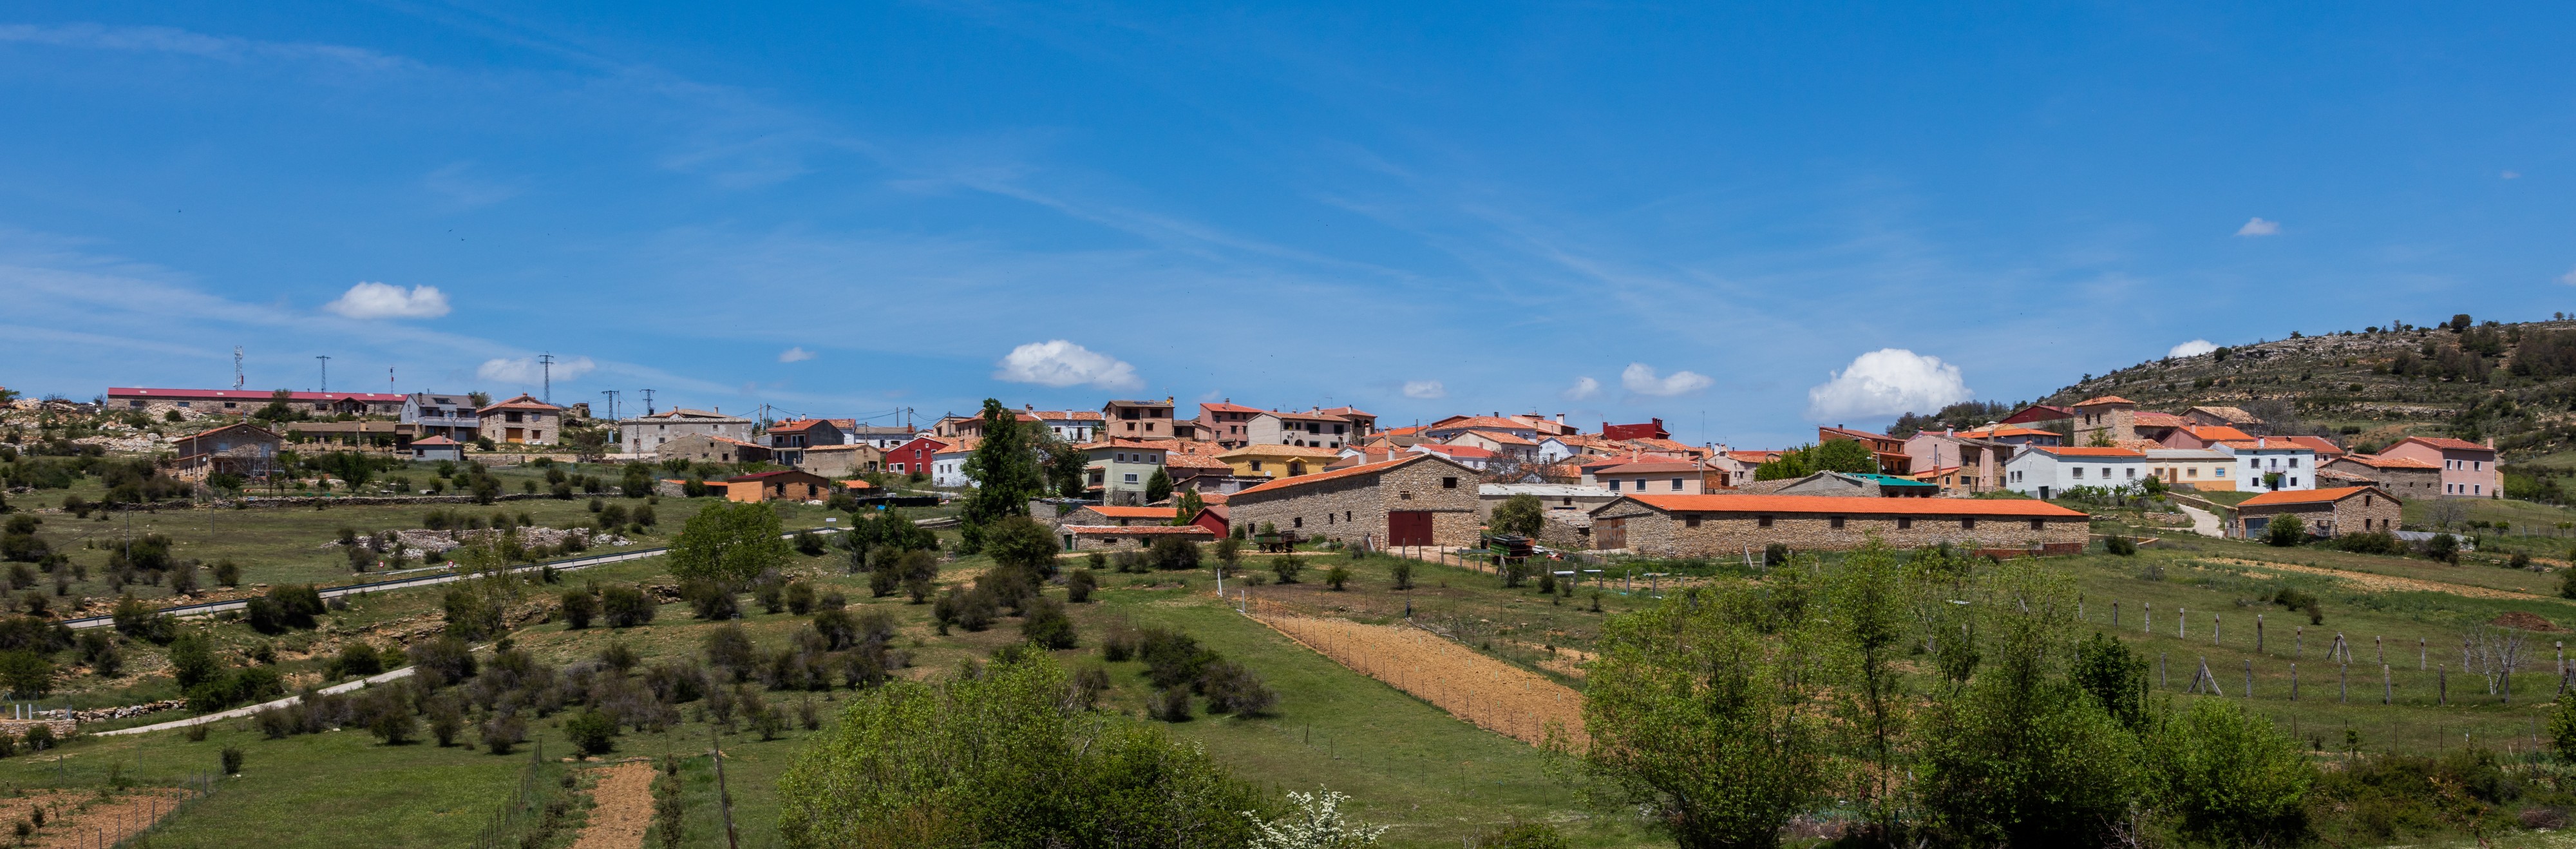 Santa María del Val, Cuenca, España, 2017-05-22, DD 47